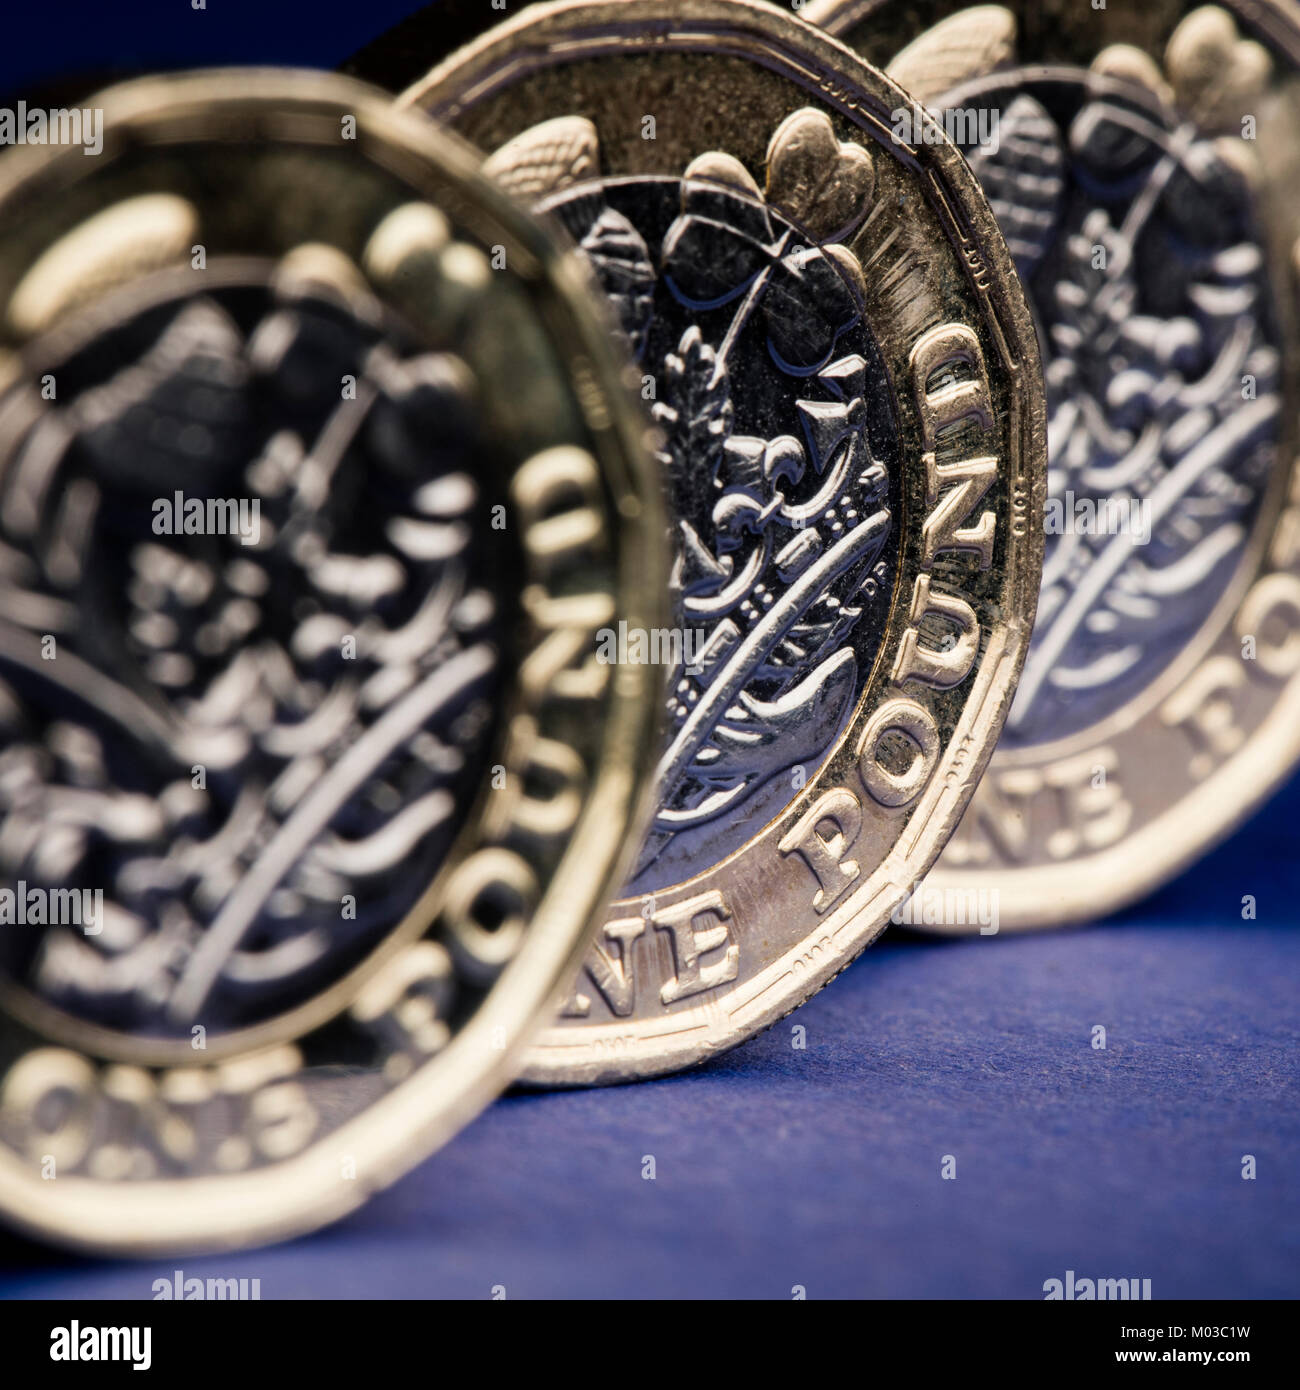 Una libra esterlina británica moneda moneda Foto de stock